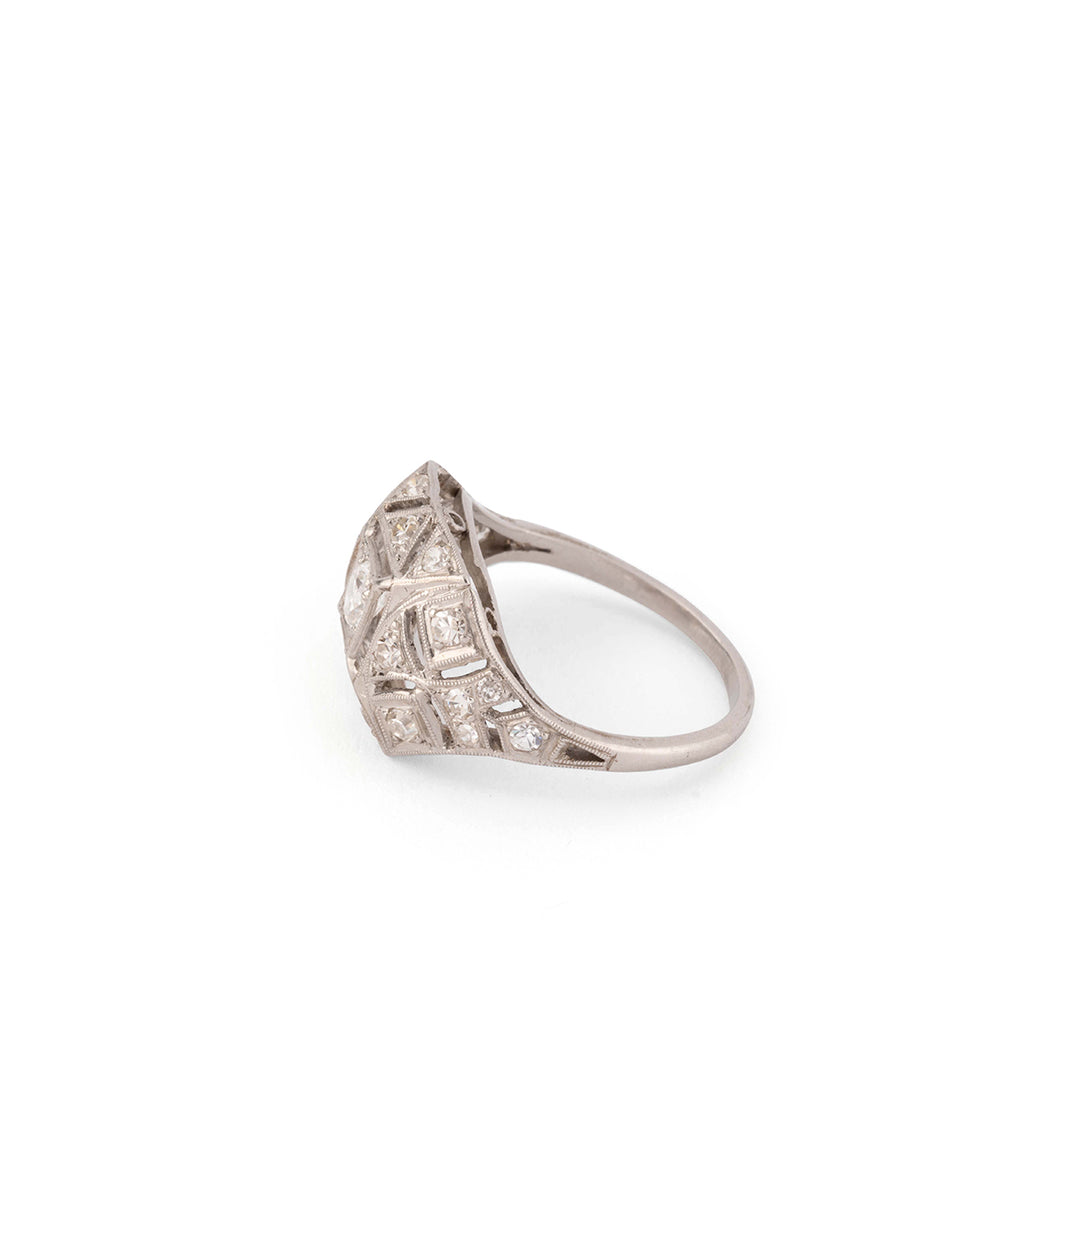 Art deco engagement ring platinum diamonds "Youli" - Caillou Paris